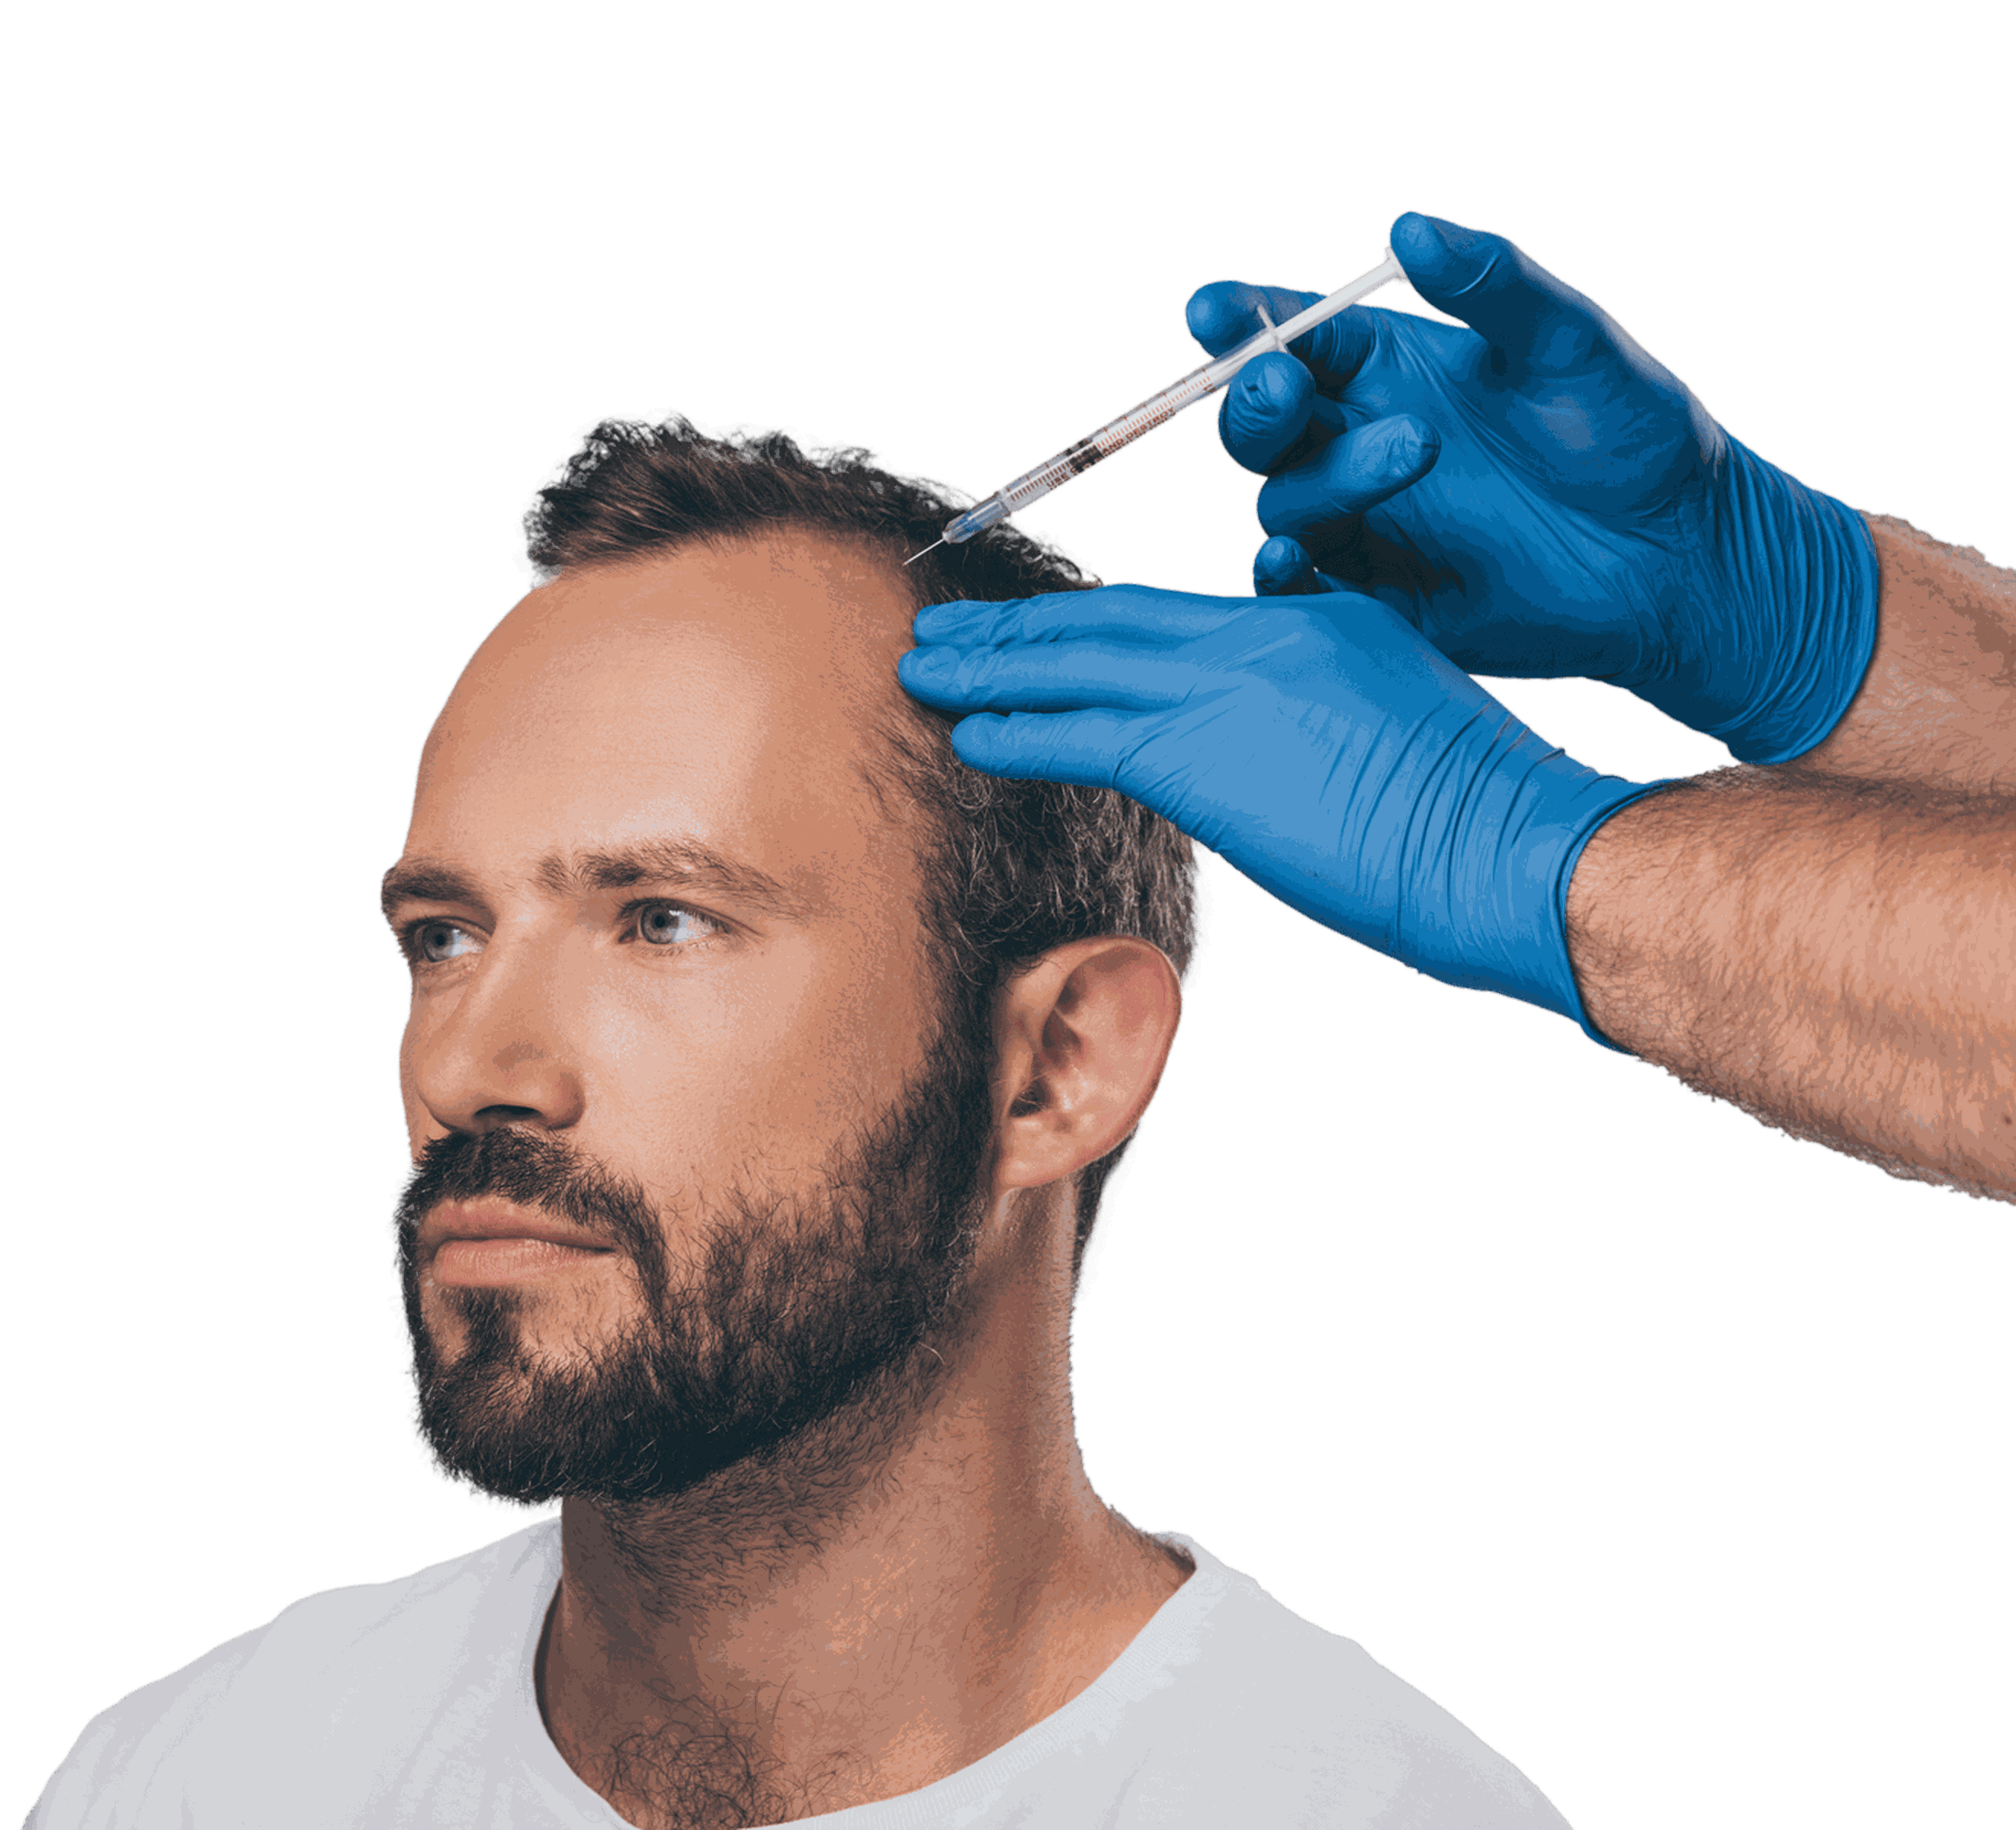 Arzt mit blauen Latexhandschuhen setzt eine Spritze am Kopf eines bärtigen Mannes mit schütterem Haar an